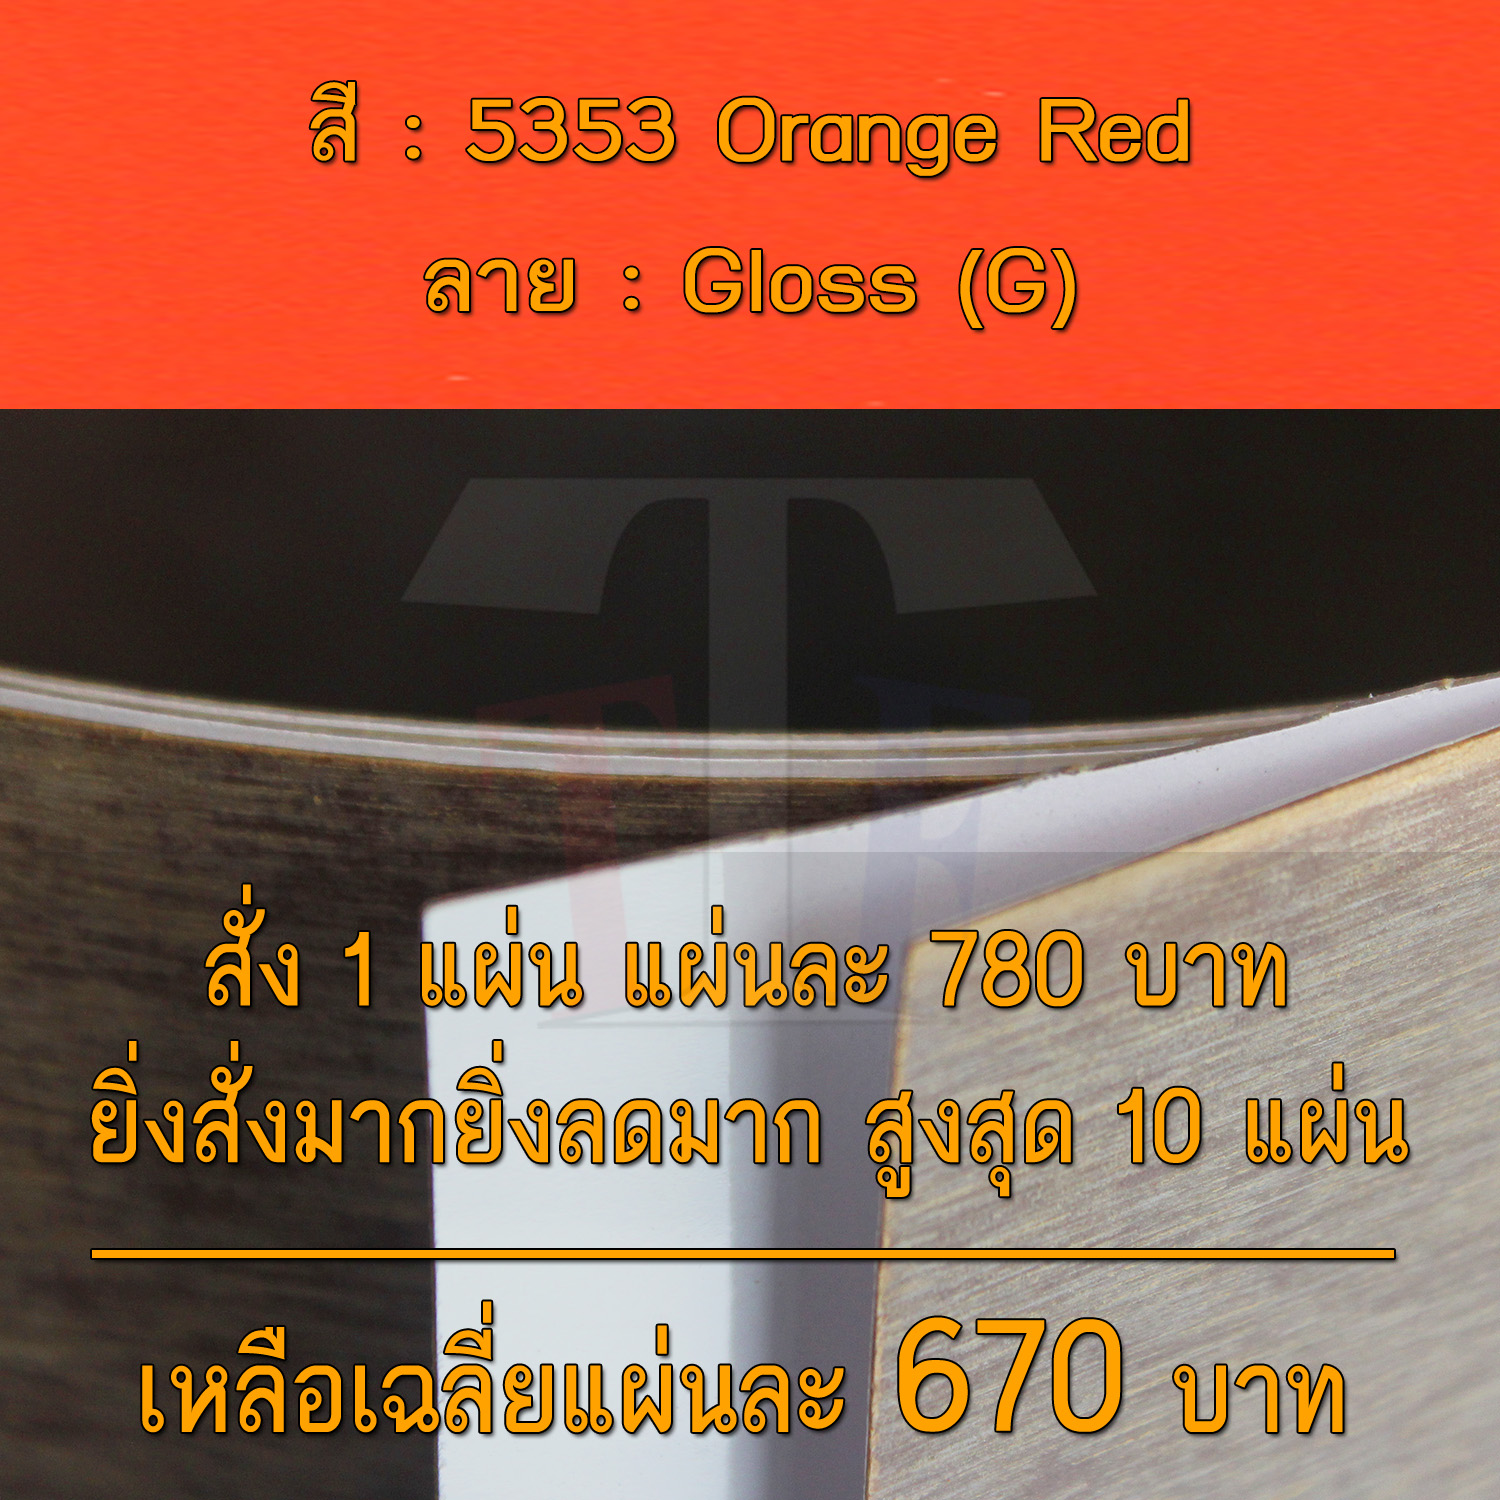 แผ่นโฟเมก้า แผ่นลามิเนต ยี่ห้อ TD Board สีส้ม รหัส 5353 Orange Red พื้นผิวลาย Gloss (G) ขนาด 1220 x 2440 มม. หนา 0.70 มม. ใช้สำหรับงานตกแต่งภายใน งานปิดผิวเฟอร์นิเจอร์ ผนัง และอื่นๆ เพื่อเพิ่มความสวยงาม formica laminate 5353G